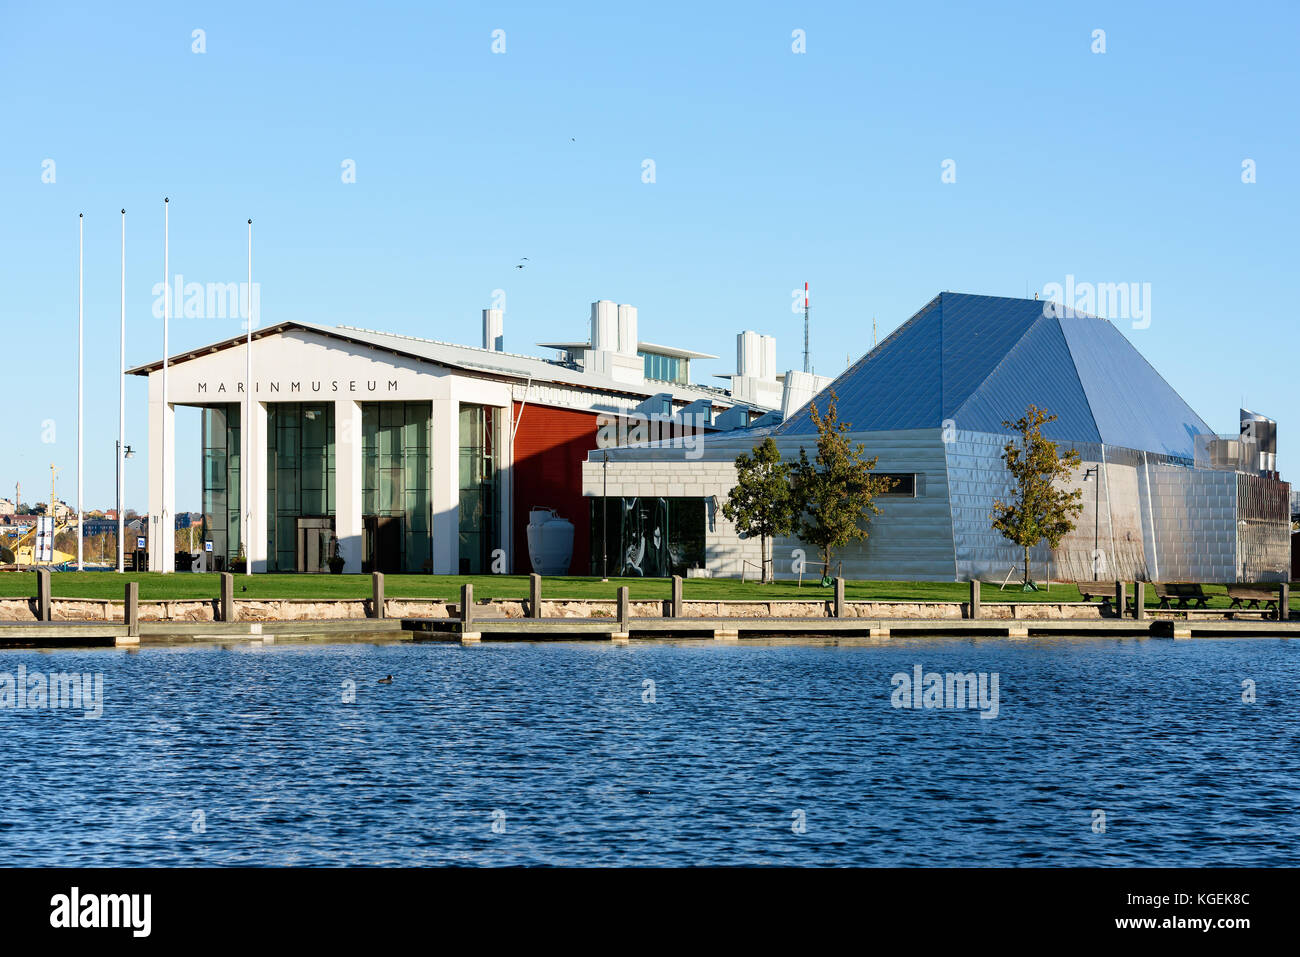 Karlskrona, Schweden - 30. Oktober 2017: Dokumentarfilm von Alltag und Umwelt. Der Eingang zum Naval Museum (marinmuseum) neben dem Metall s Stockfoto